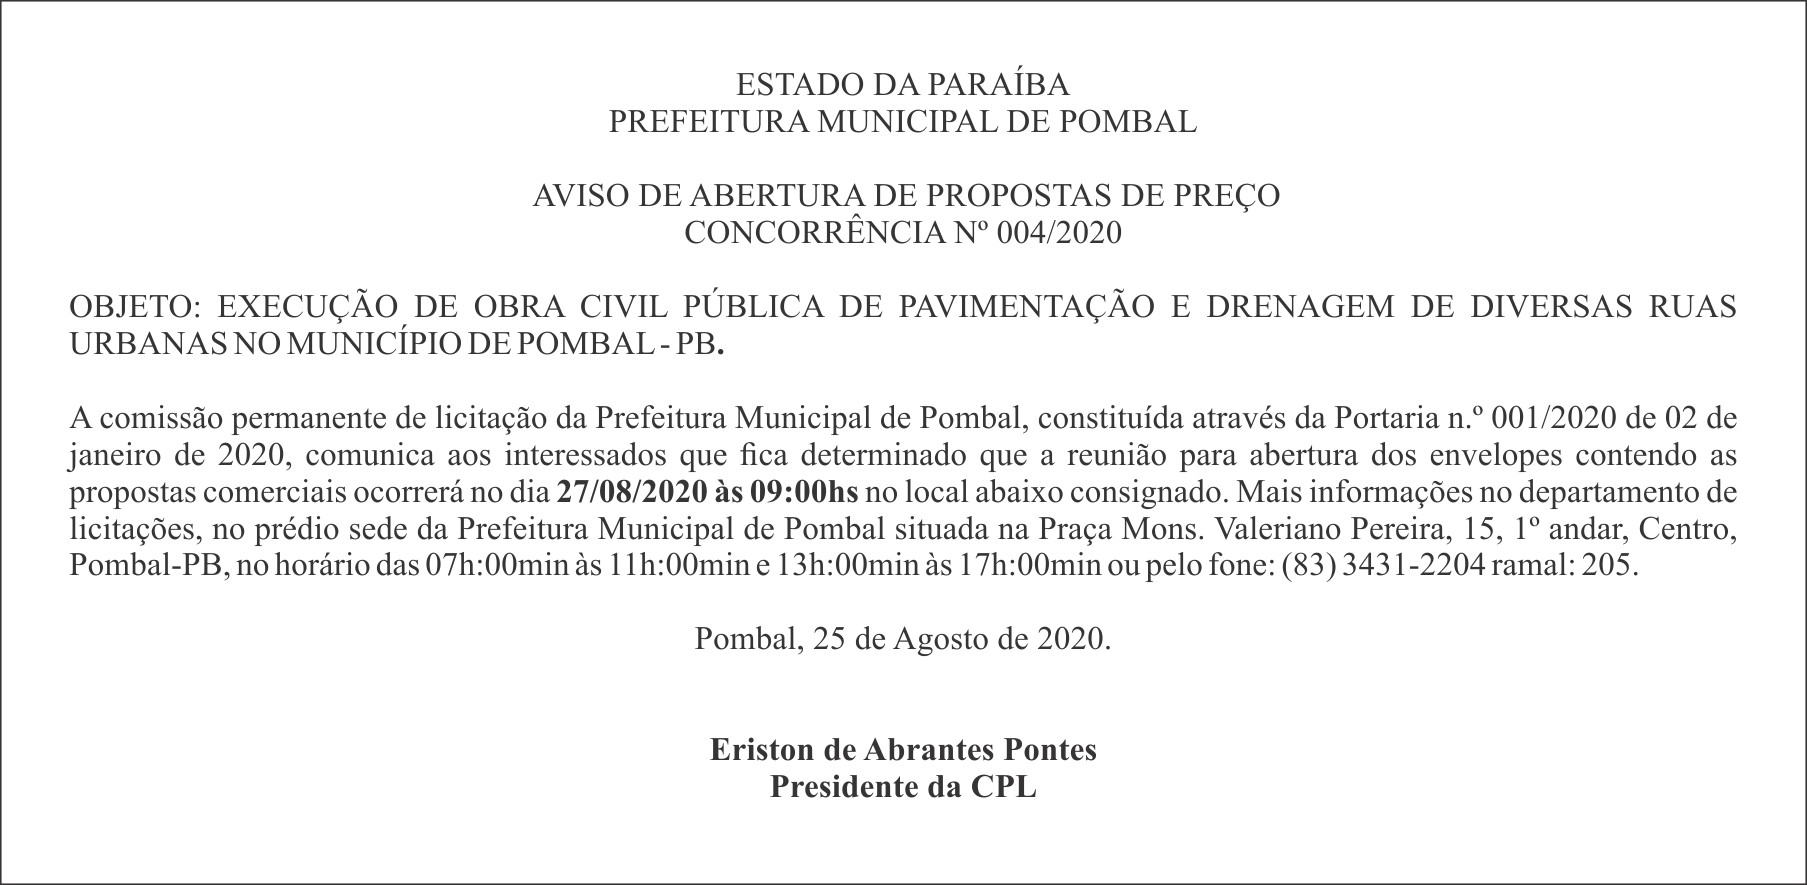 PREFEITURA MUNICIPAL DE POMBAL – AVISO DE ABERTURA DE PROPOSTAS DE PREÇO – CONCORRÊNCIA Nº 004/2020